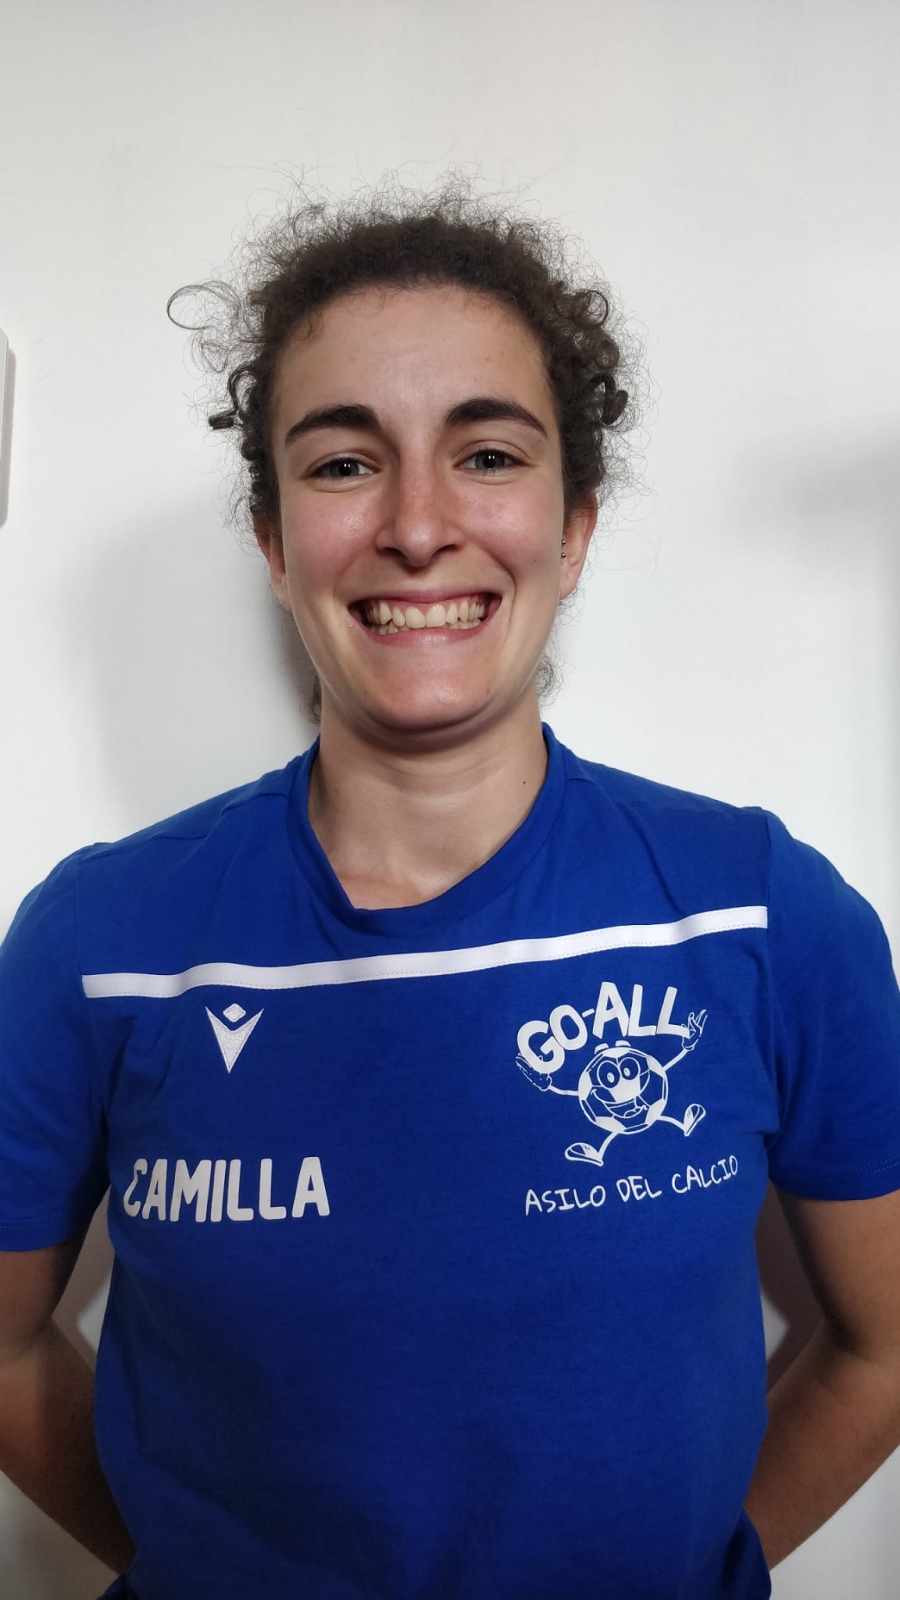 Camilla Acciarino